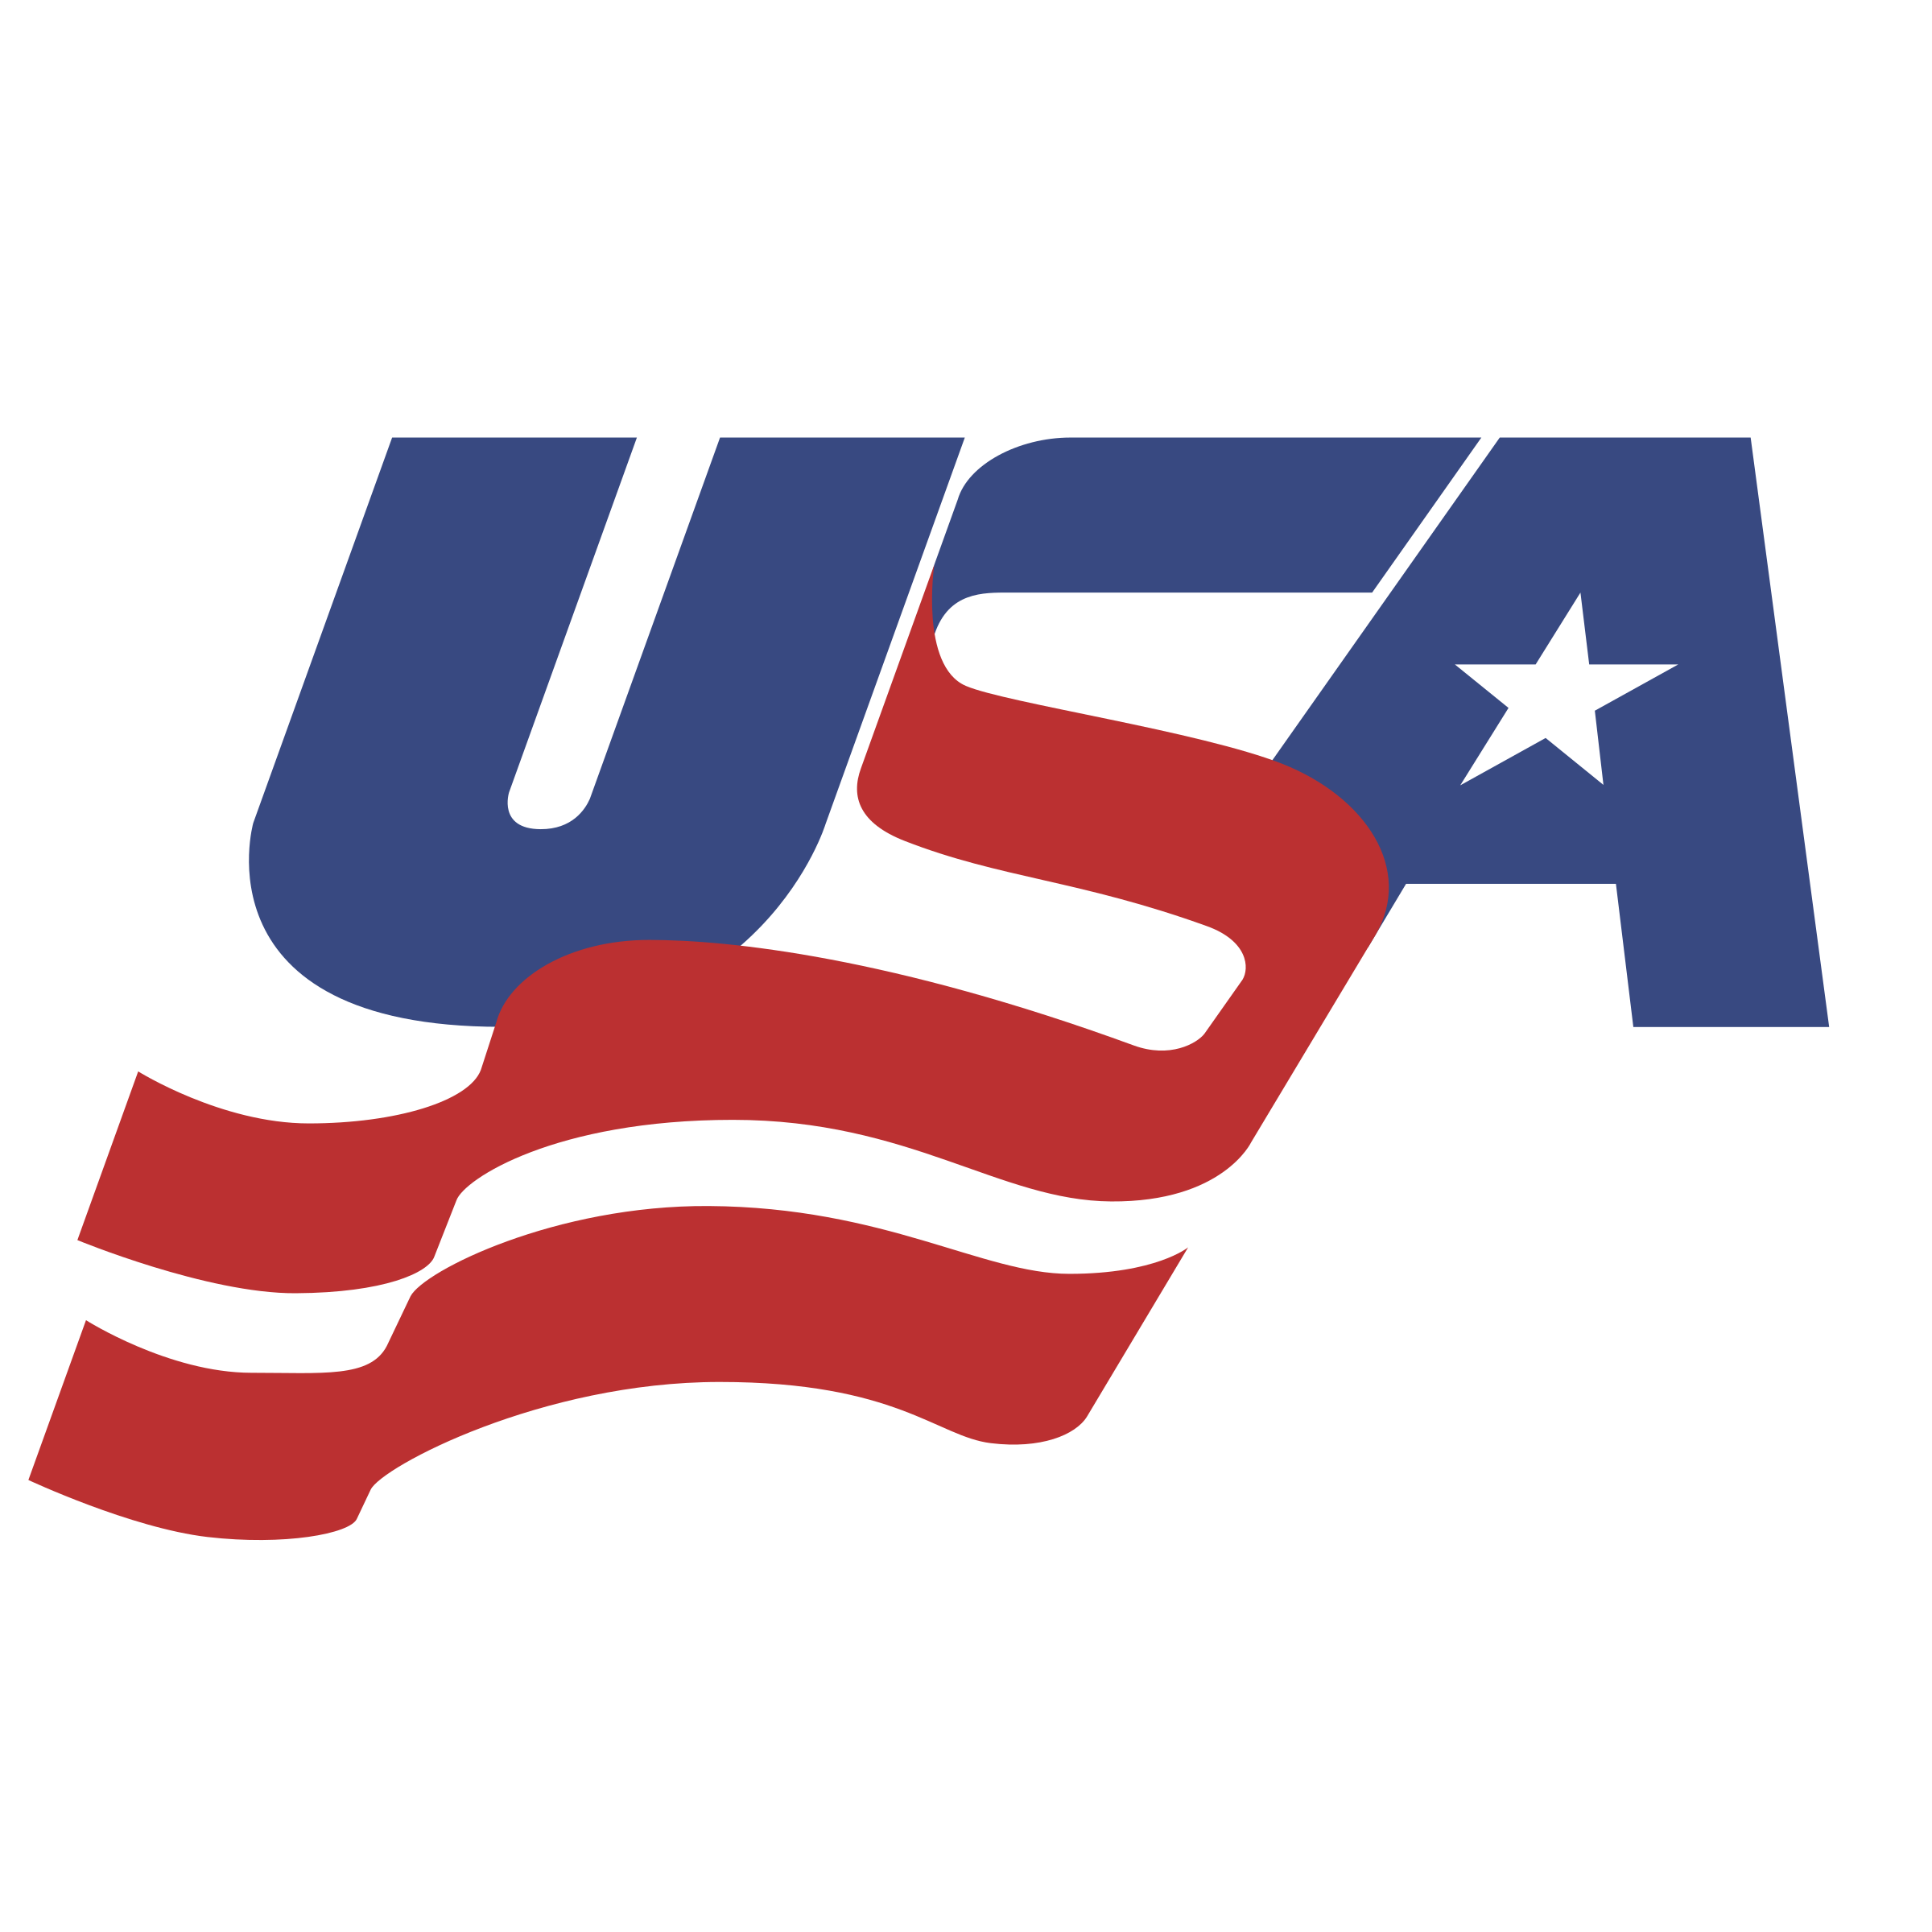 США logo PNG image